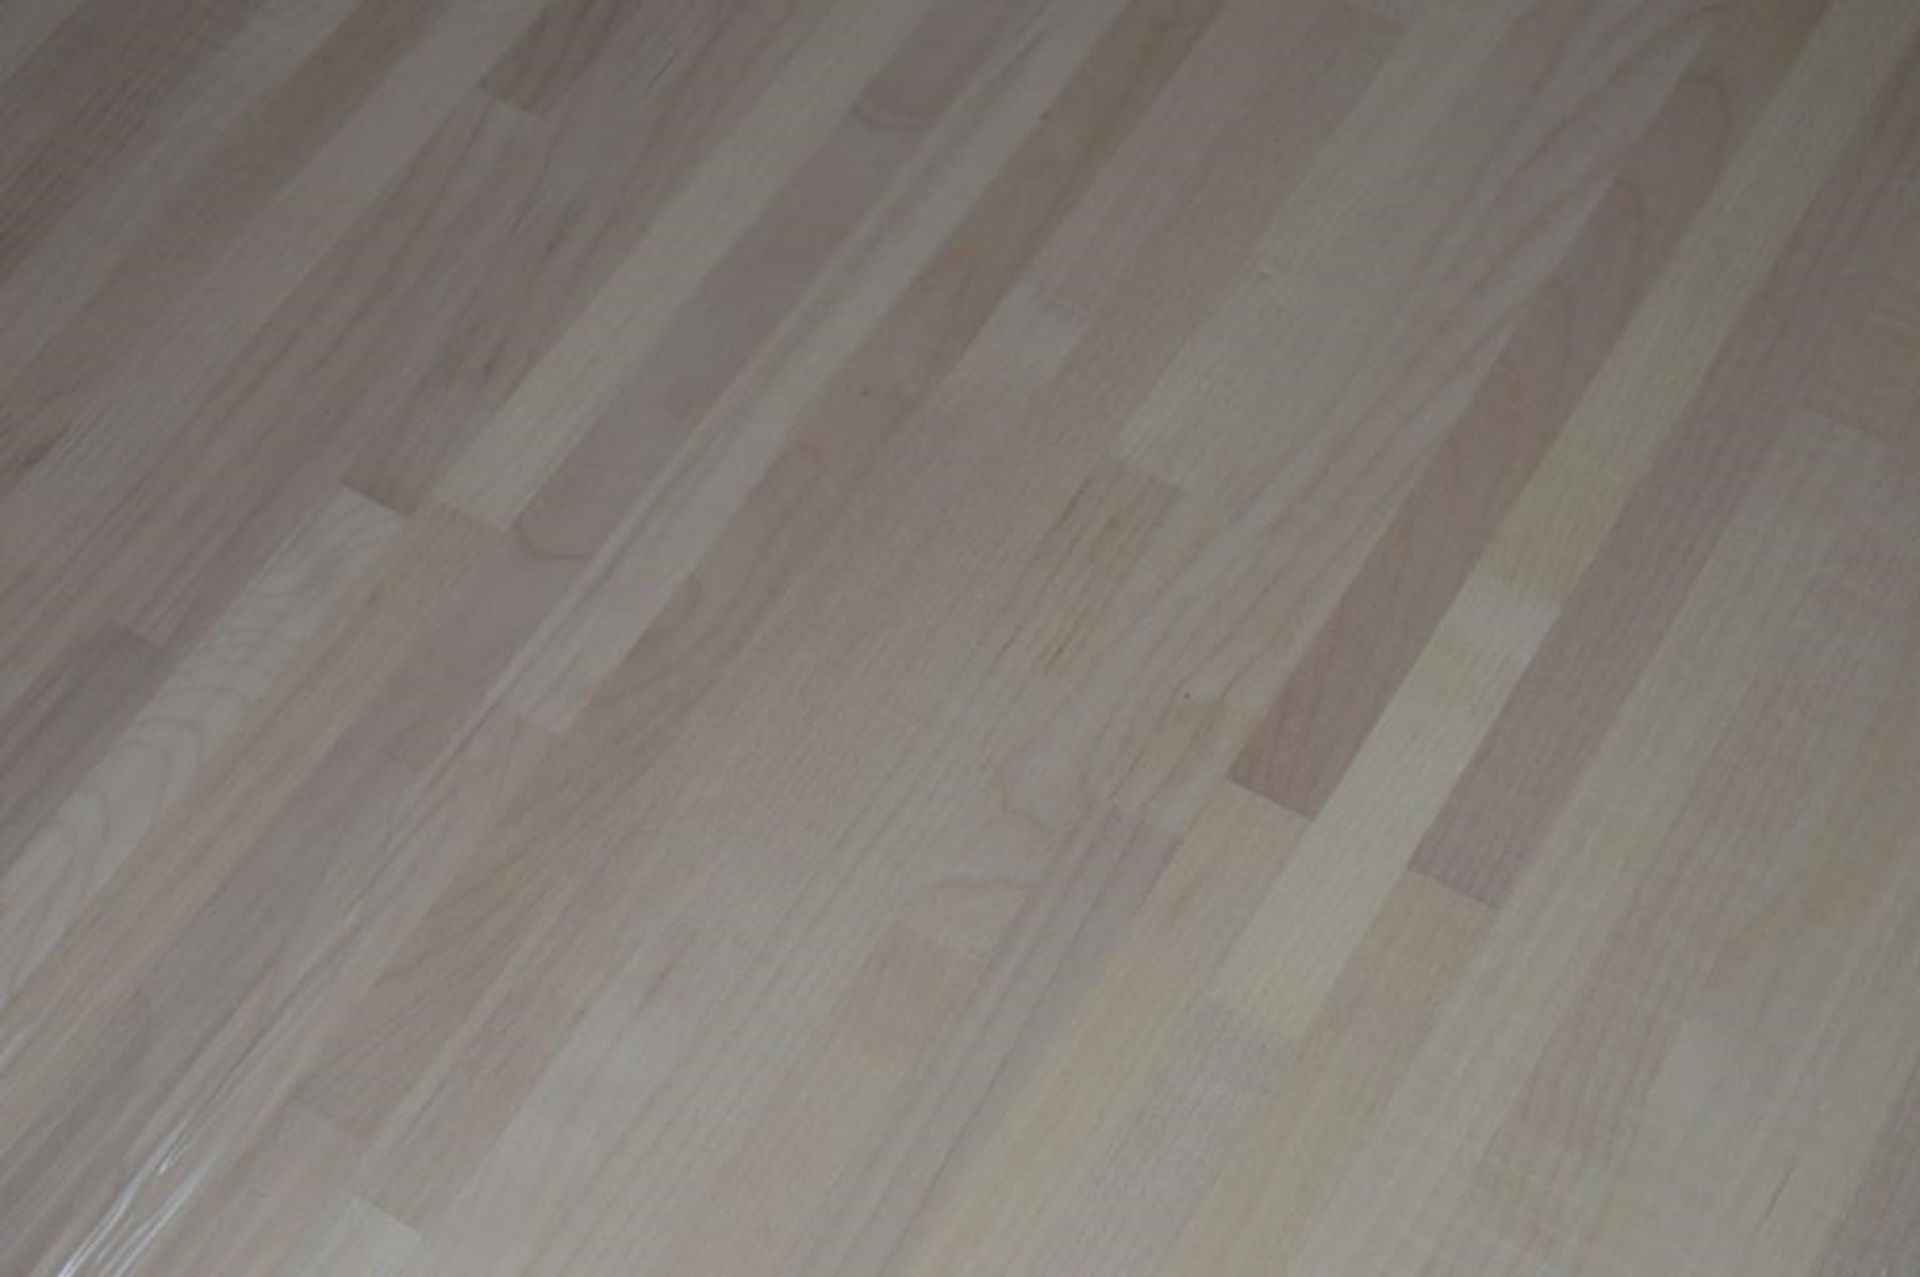 1 x Solid Wood Kitchen Worktop - EUROPEAN MAPLE - Maple Blockwood Kitchen Worktop - Size: 3000 x 900 - Image 5 of 5